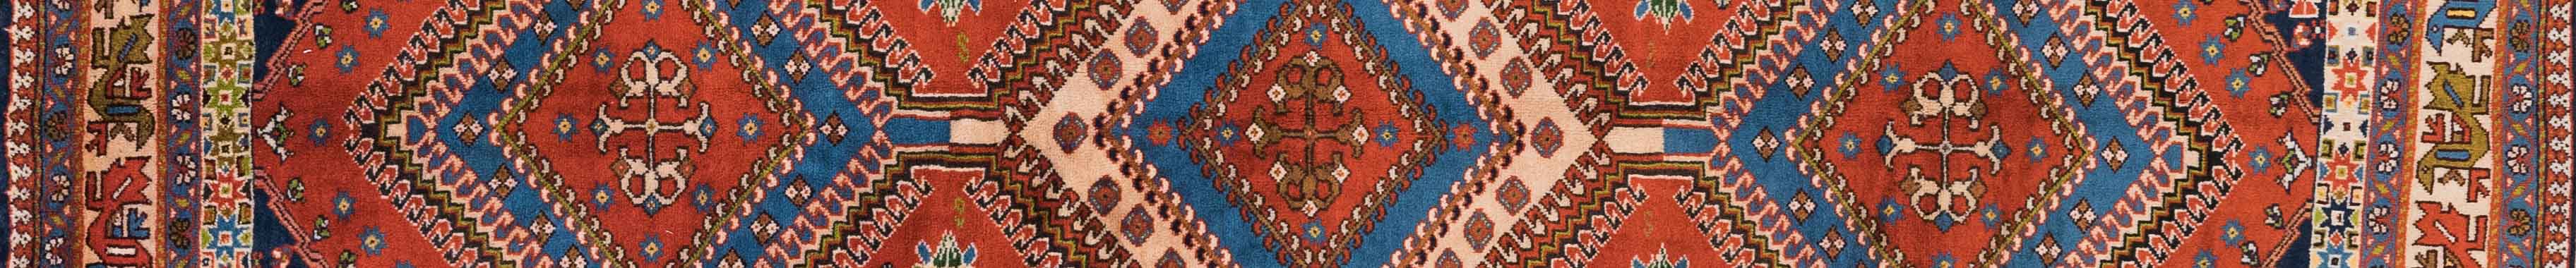 Yalameh Persian Carpet Rug N1Carpet Canada Montreal Tapis Persan 3150